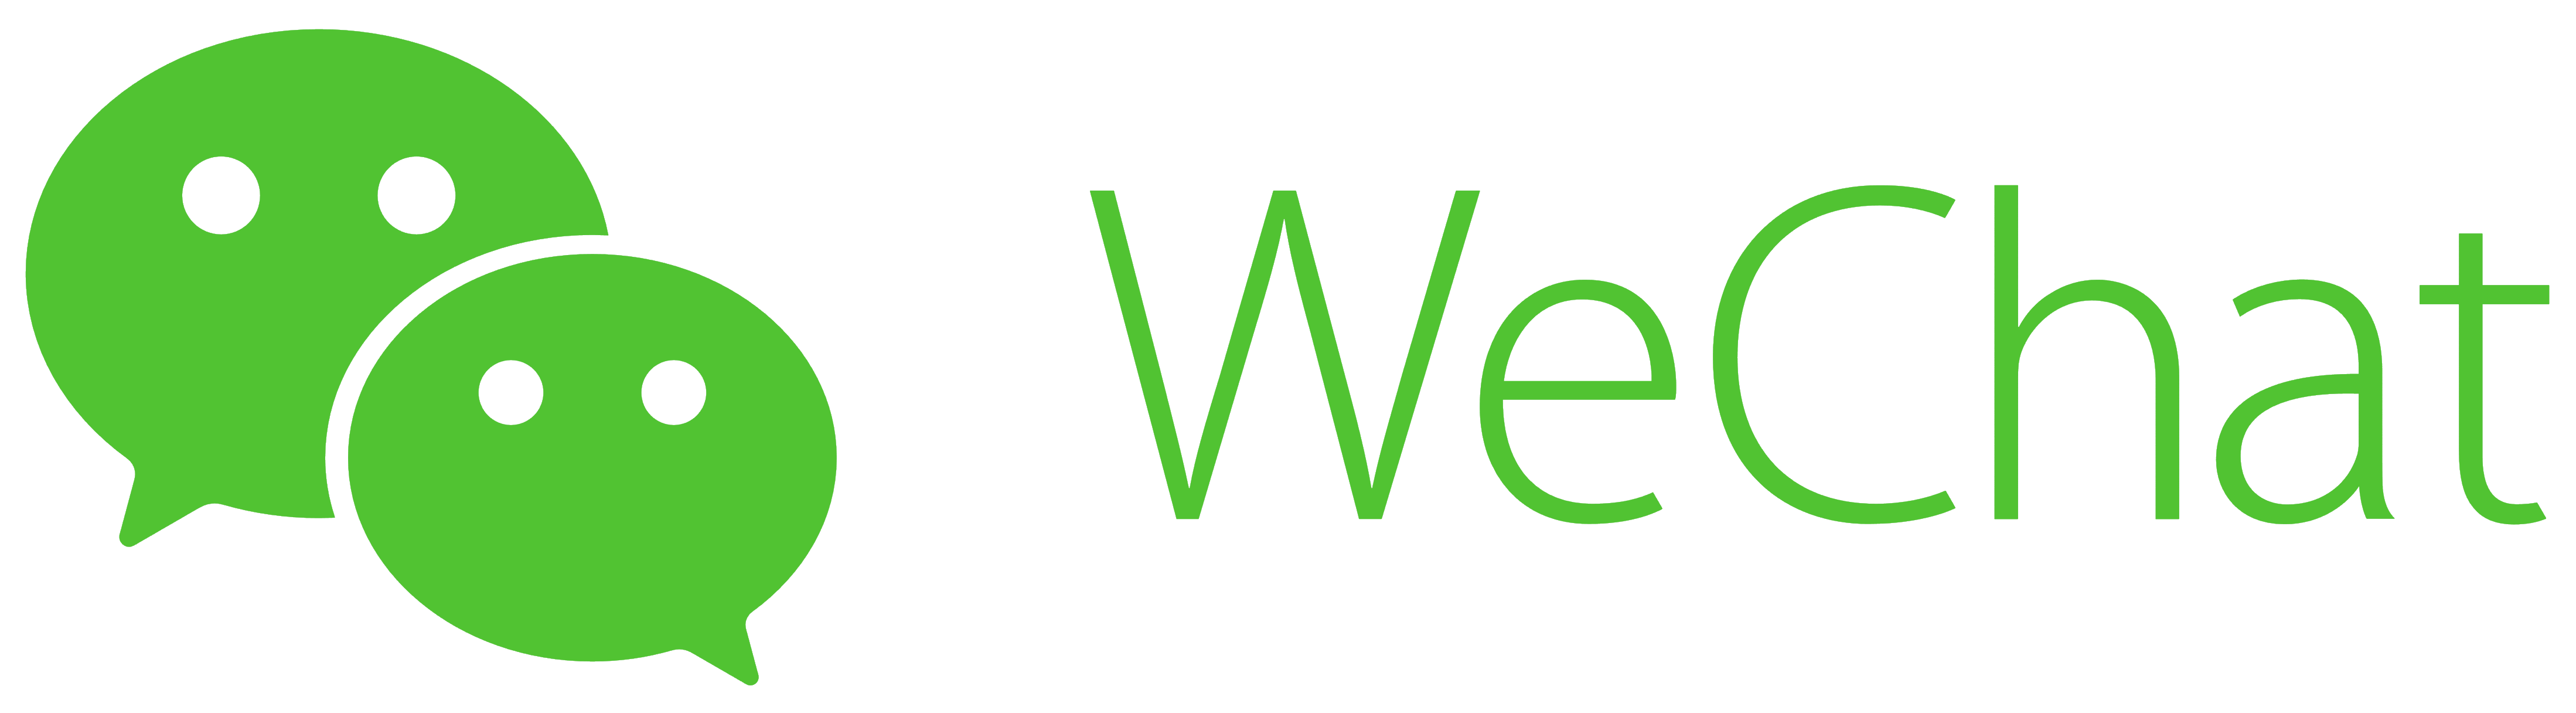 logo-wechat